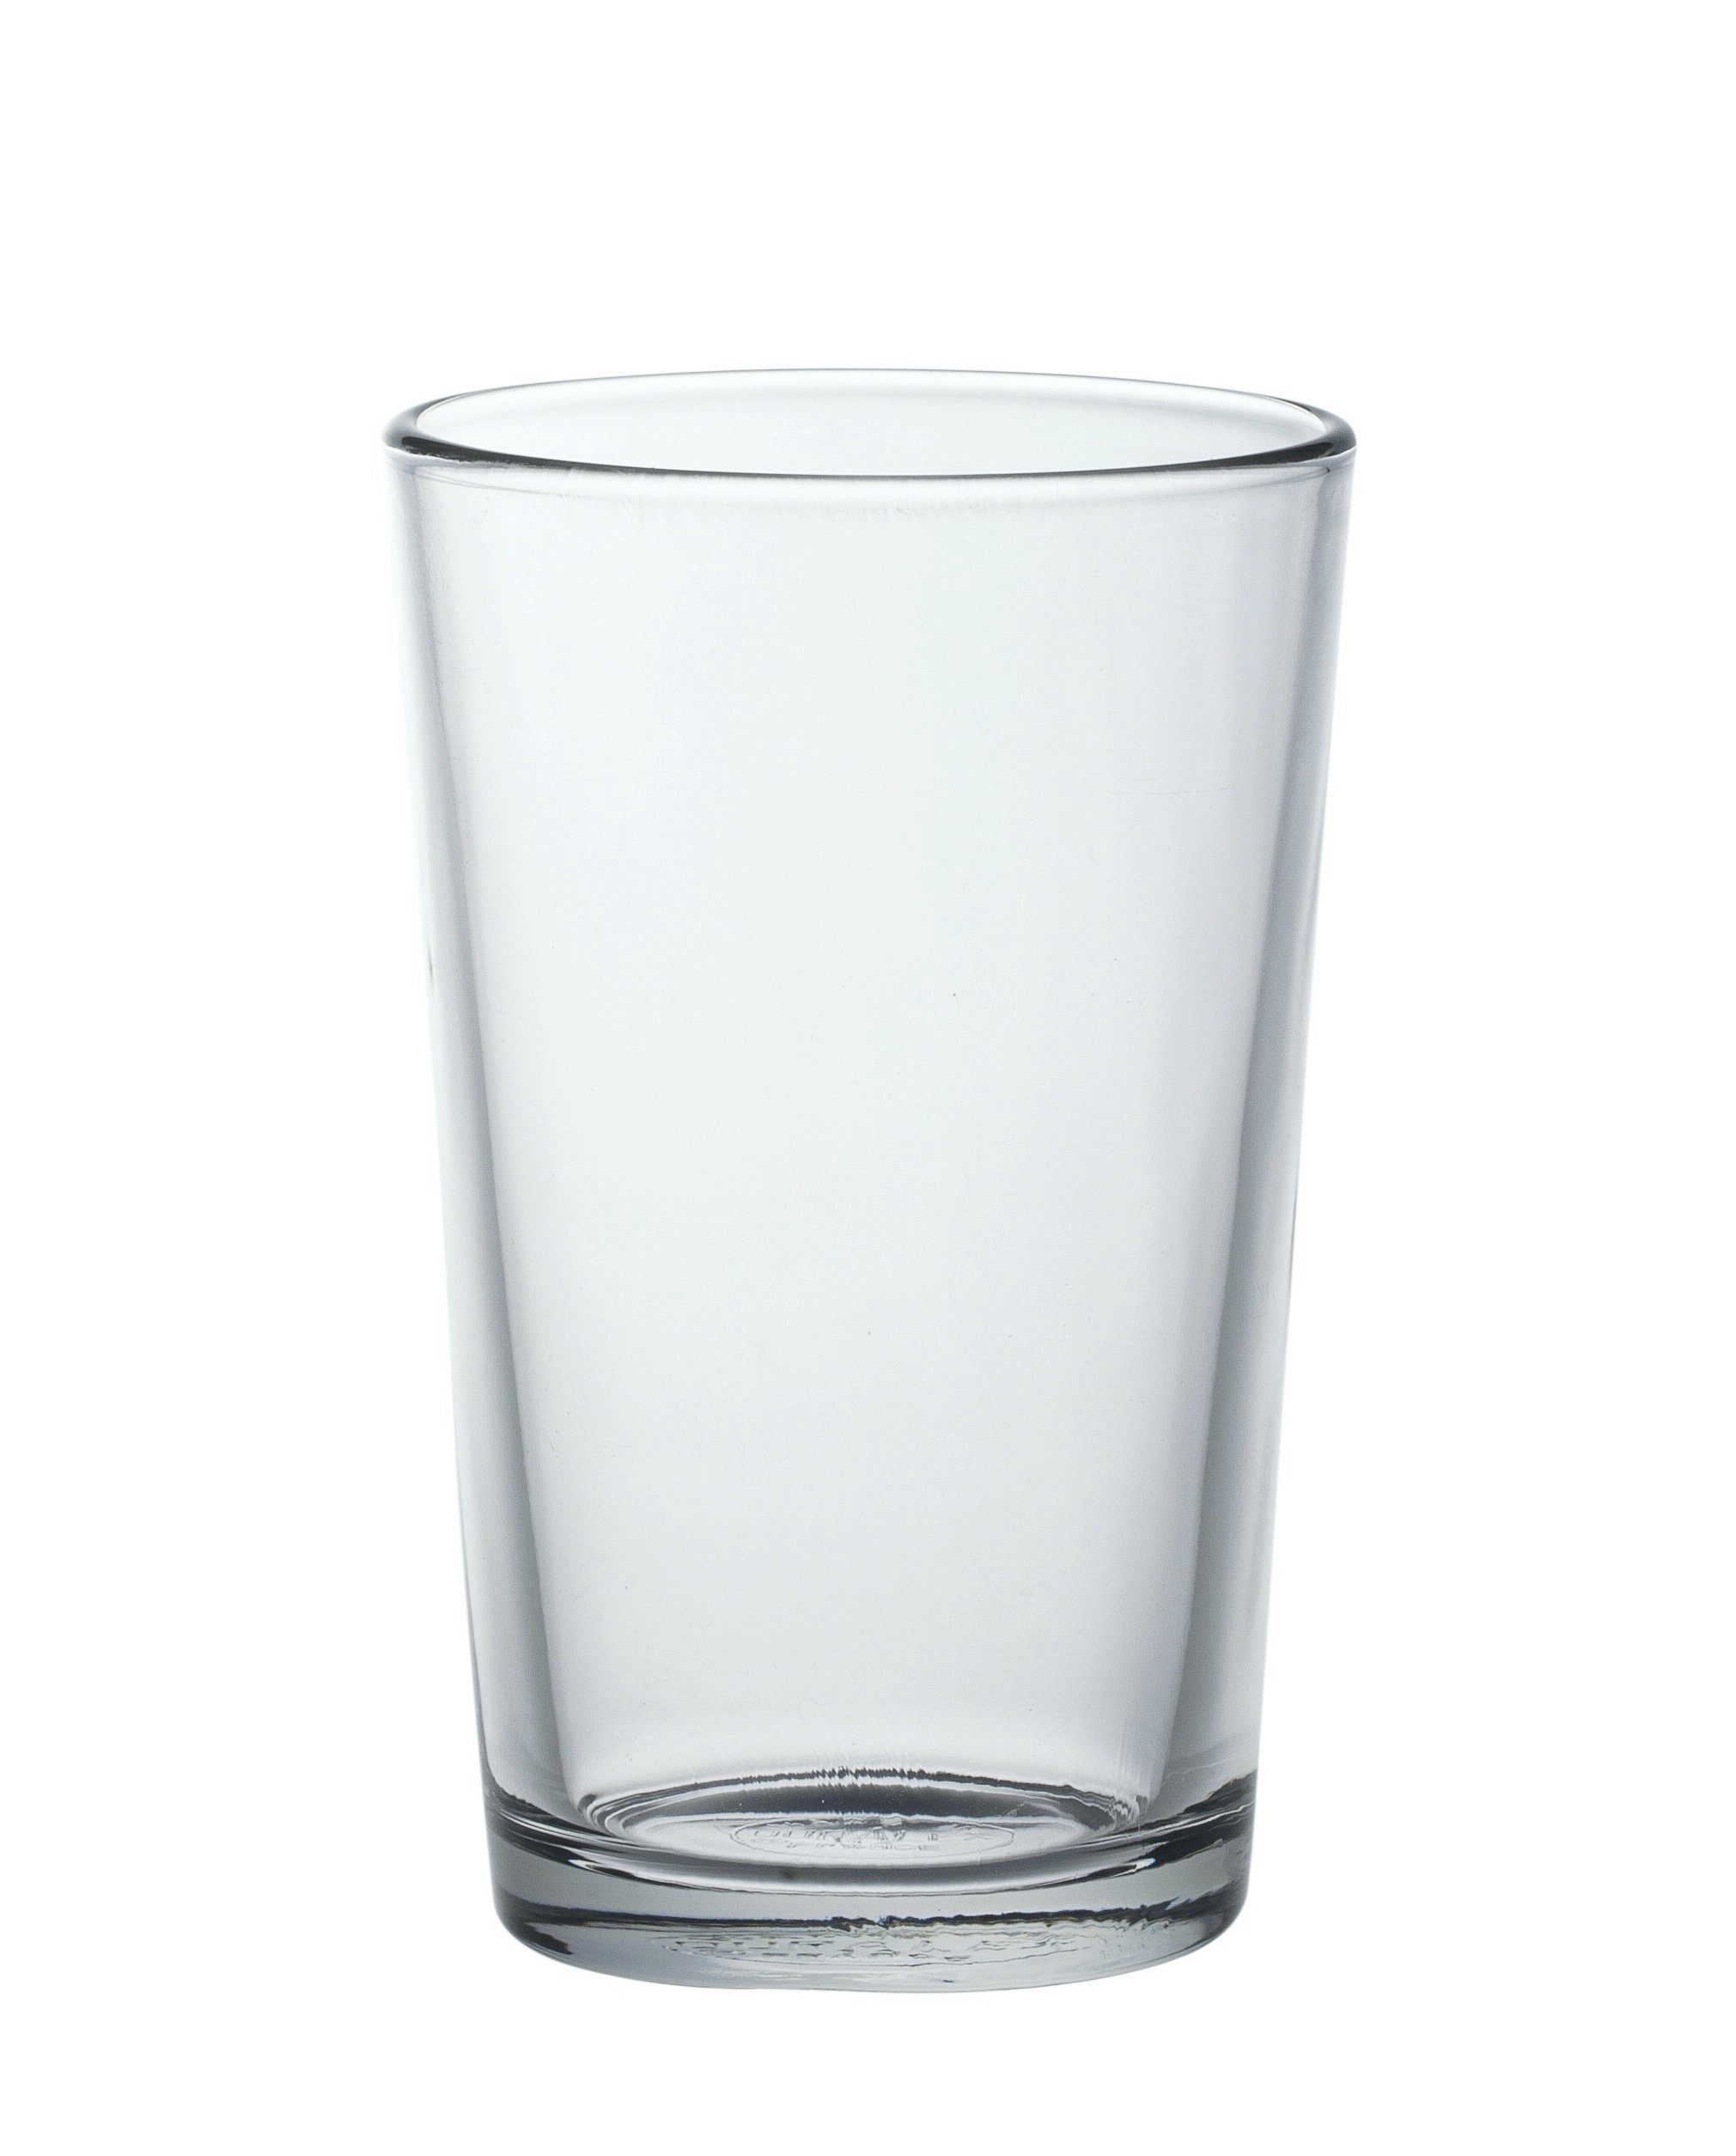 Glas Duralex gehärtet, Trinkglas gehärtet Unie, Füllstrich 6 Stück Glas Tumbler-Glas transparent Tumbler Chope ohne 200ml